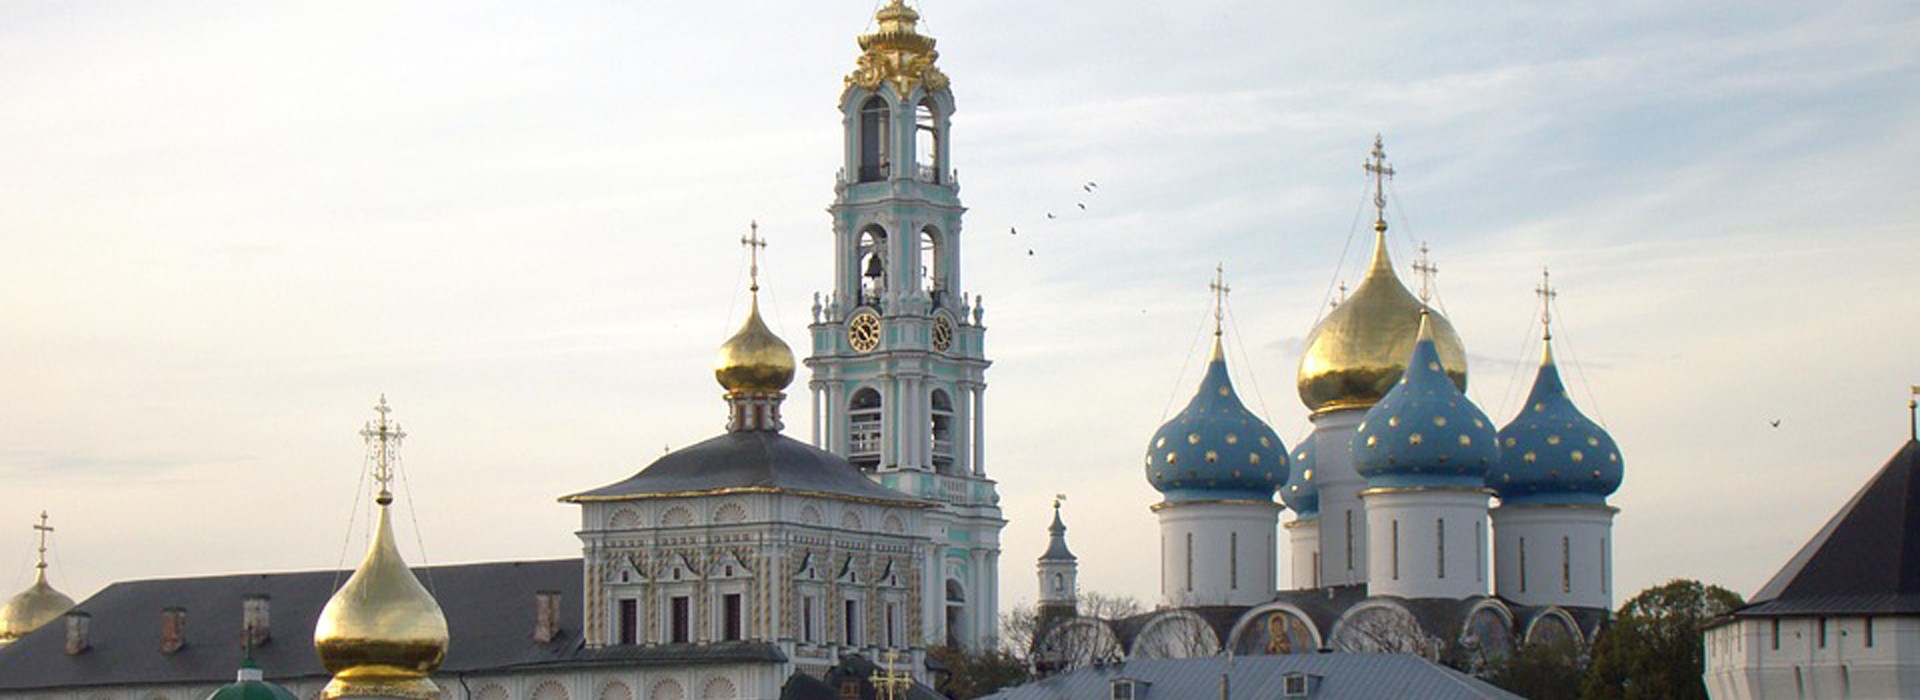 Visiter La cathédrale de la Trinité - Russie